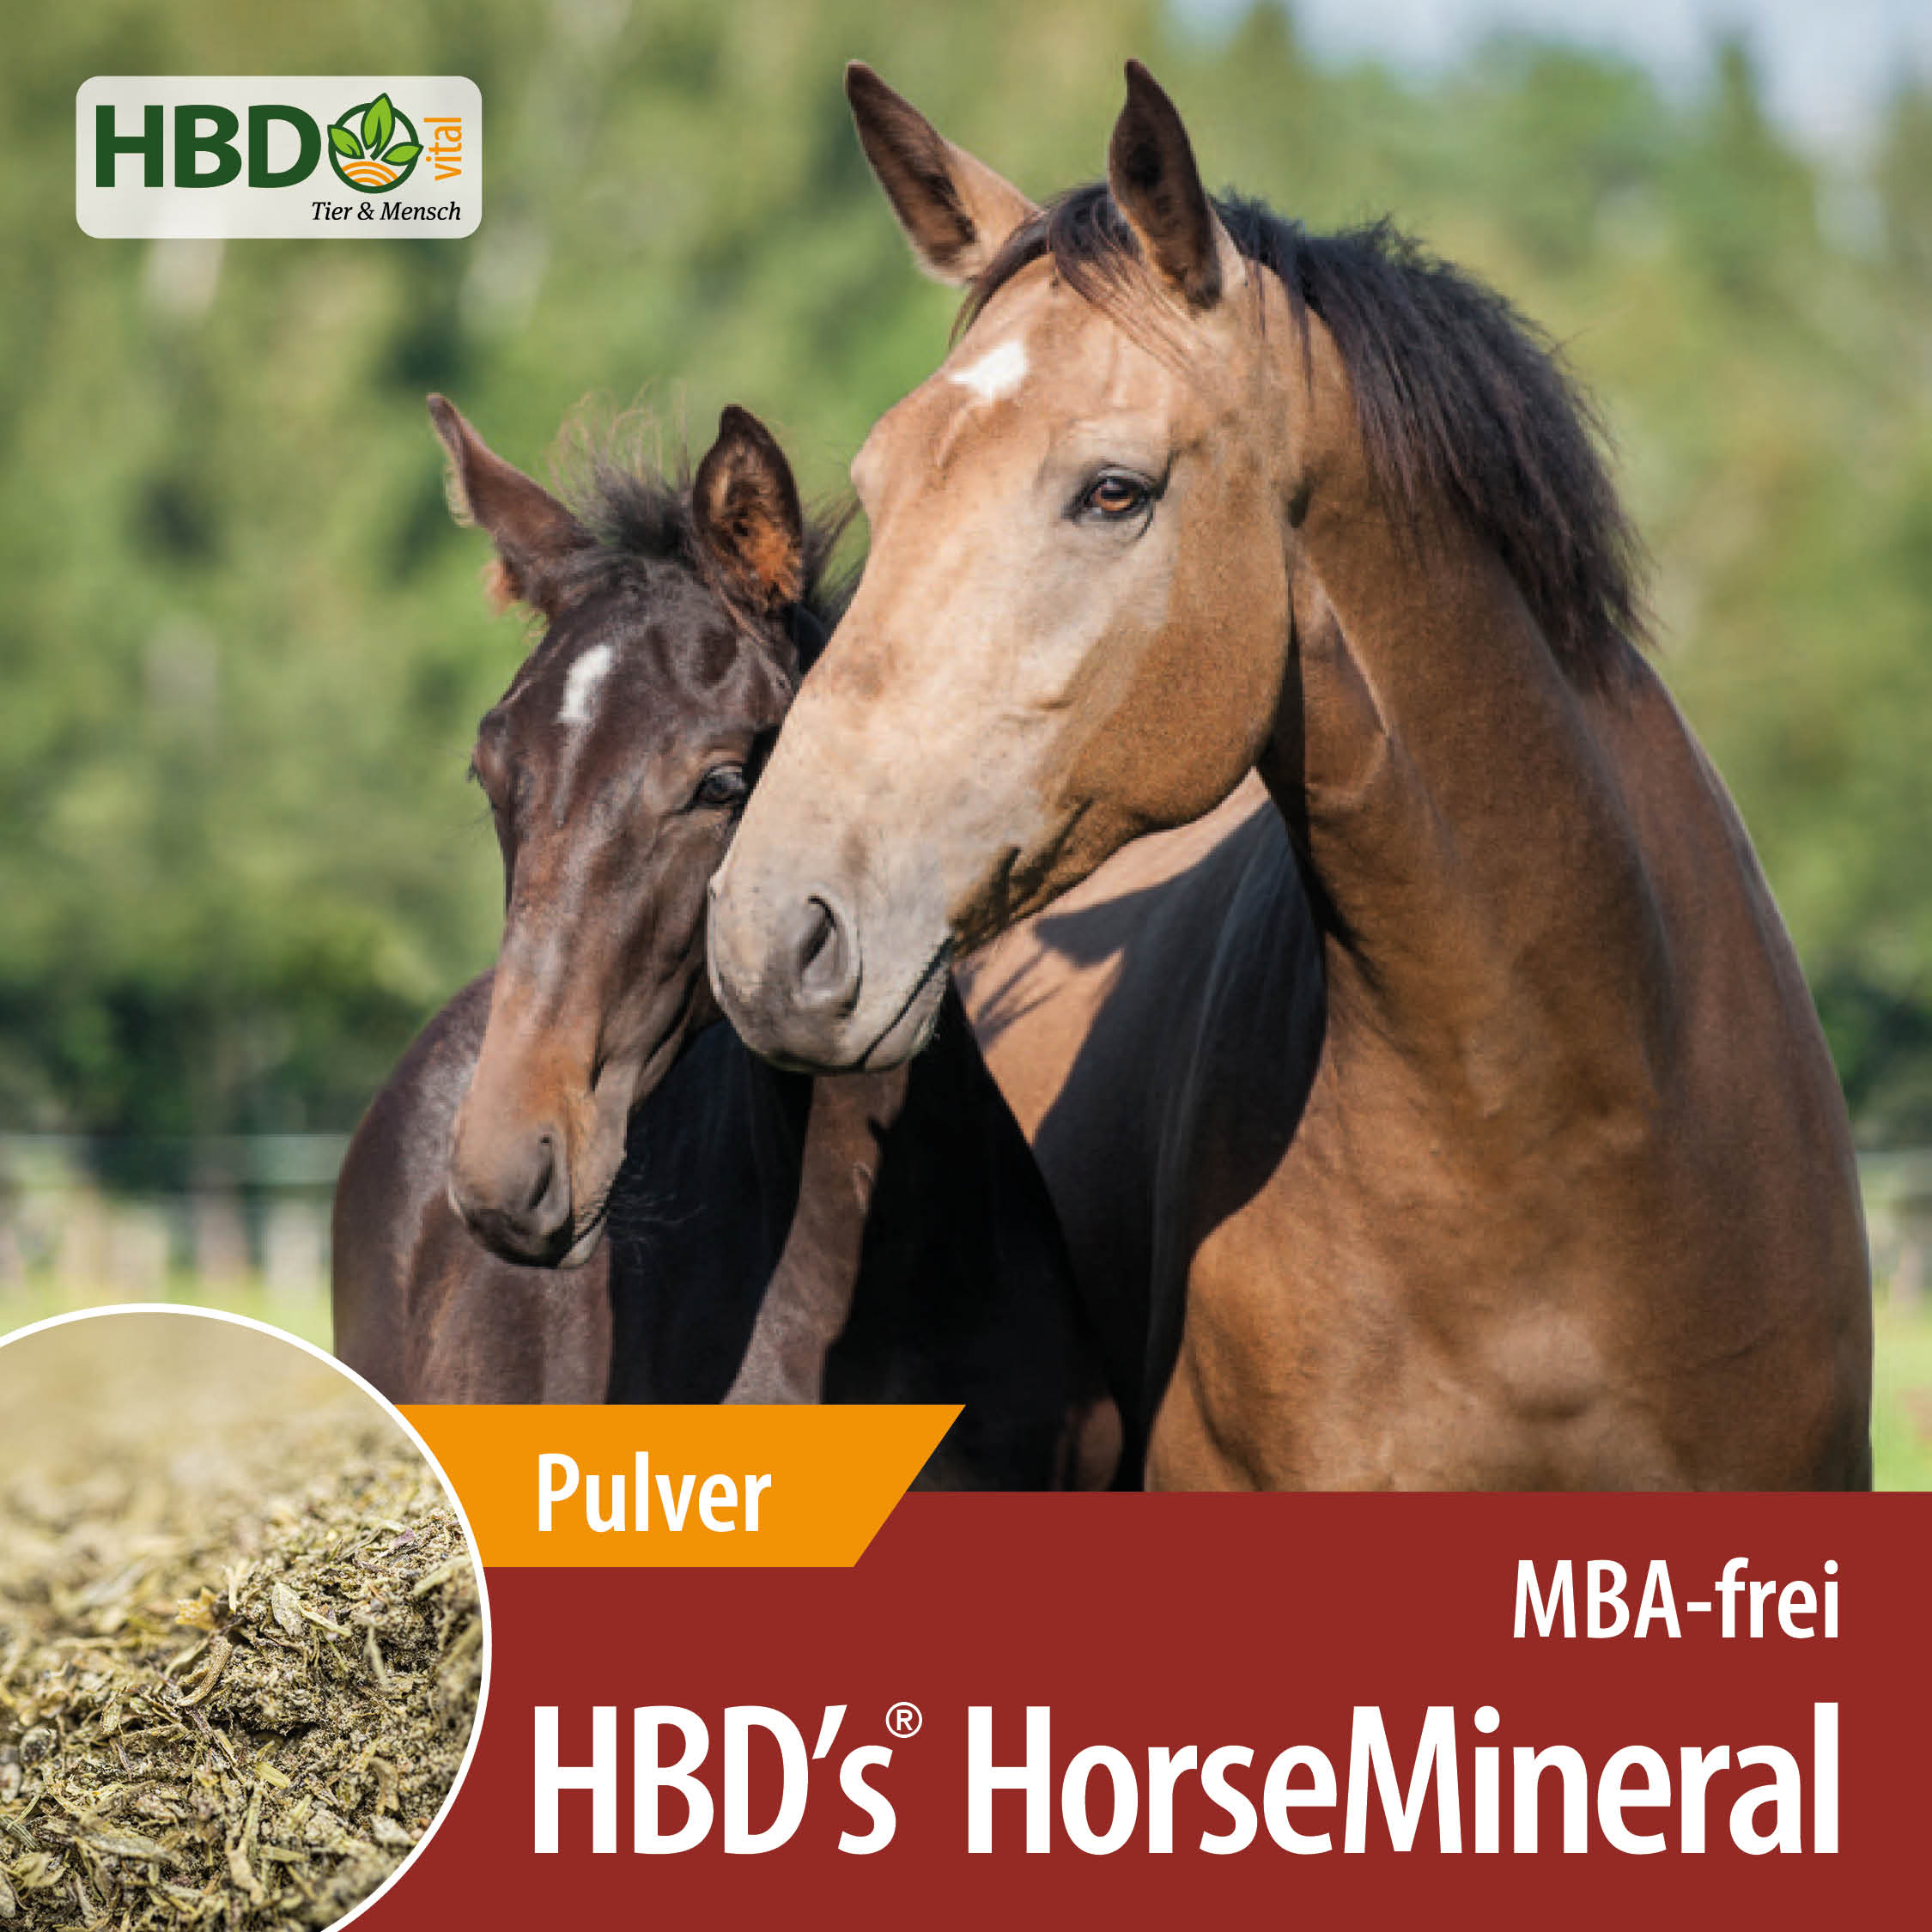 Shopbild für HBD’s Horsemineral MBA-frei Pulver - Das Bild zeigt den Produktnamen sowie den Hinweis, dass es sich um Melasse-, Bierhefe- und Apfeltrester-freies Pulver handelt. Zwei Pferde sind zu sehen, eines hellbraun,